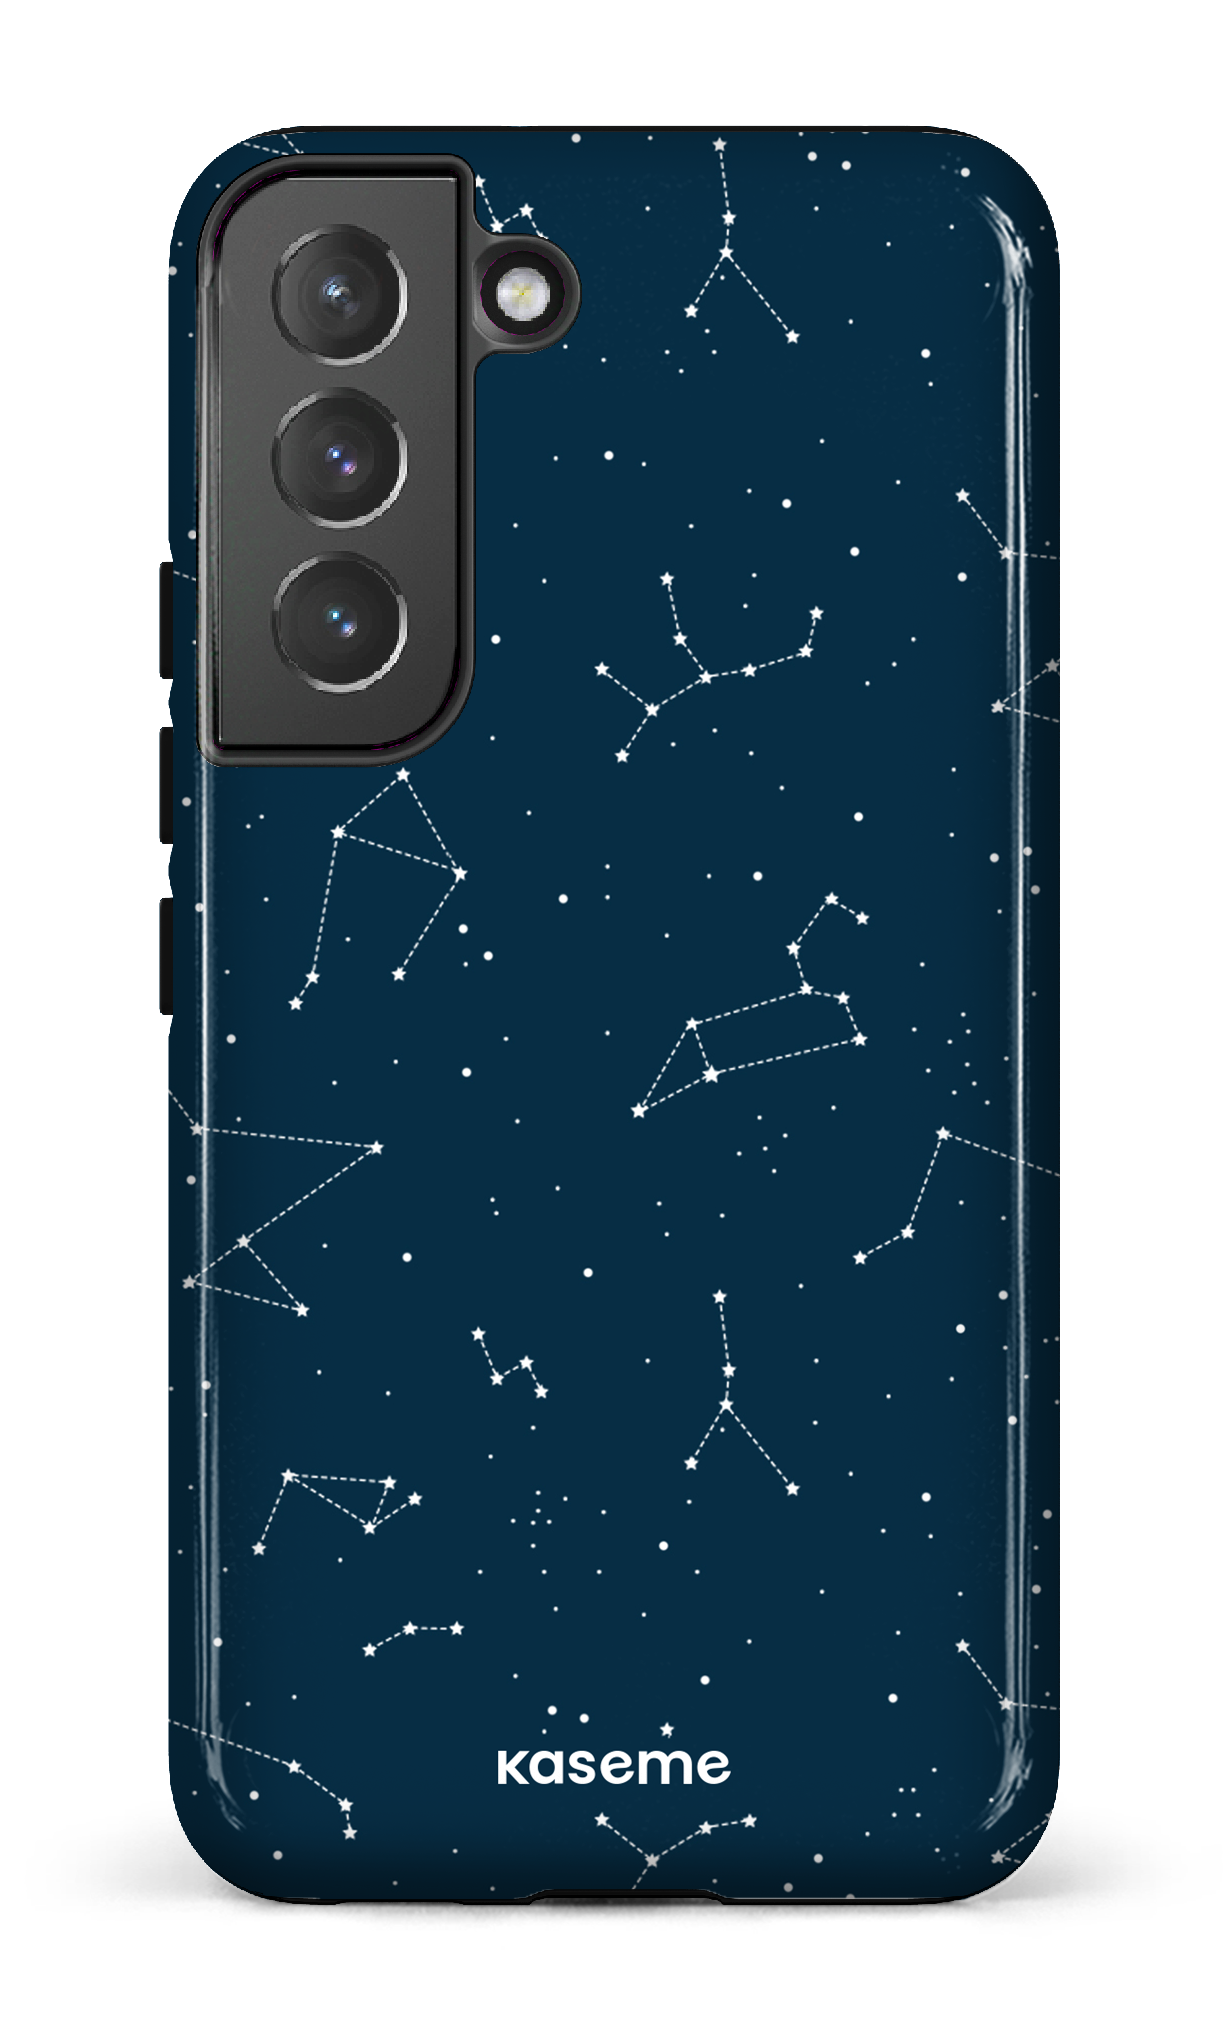 Cosmos - Galaxy S22